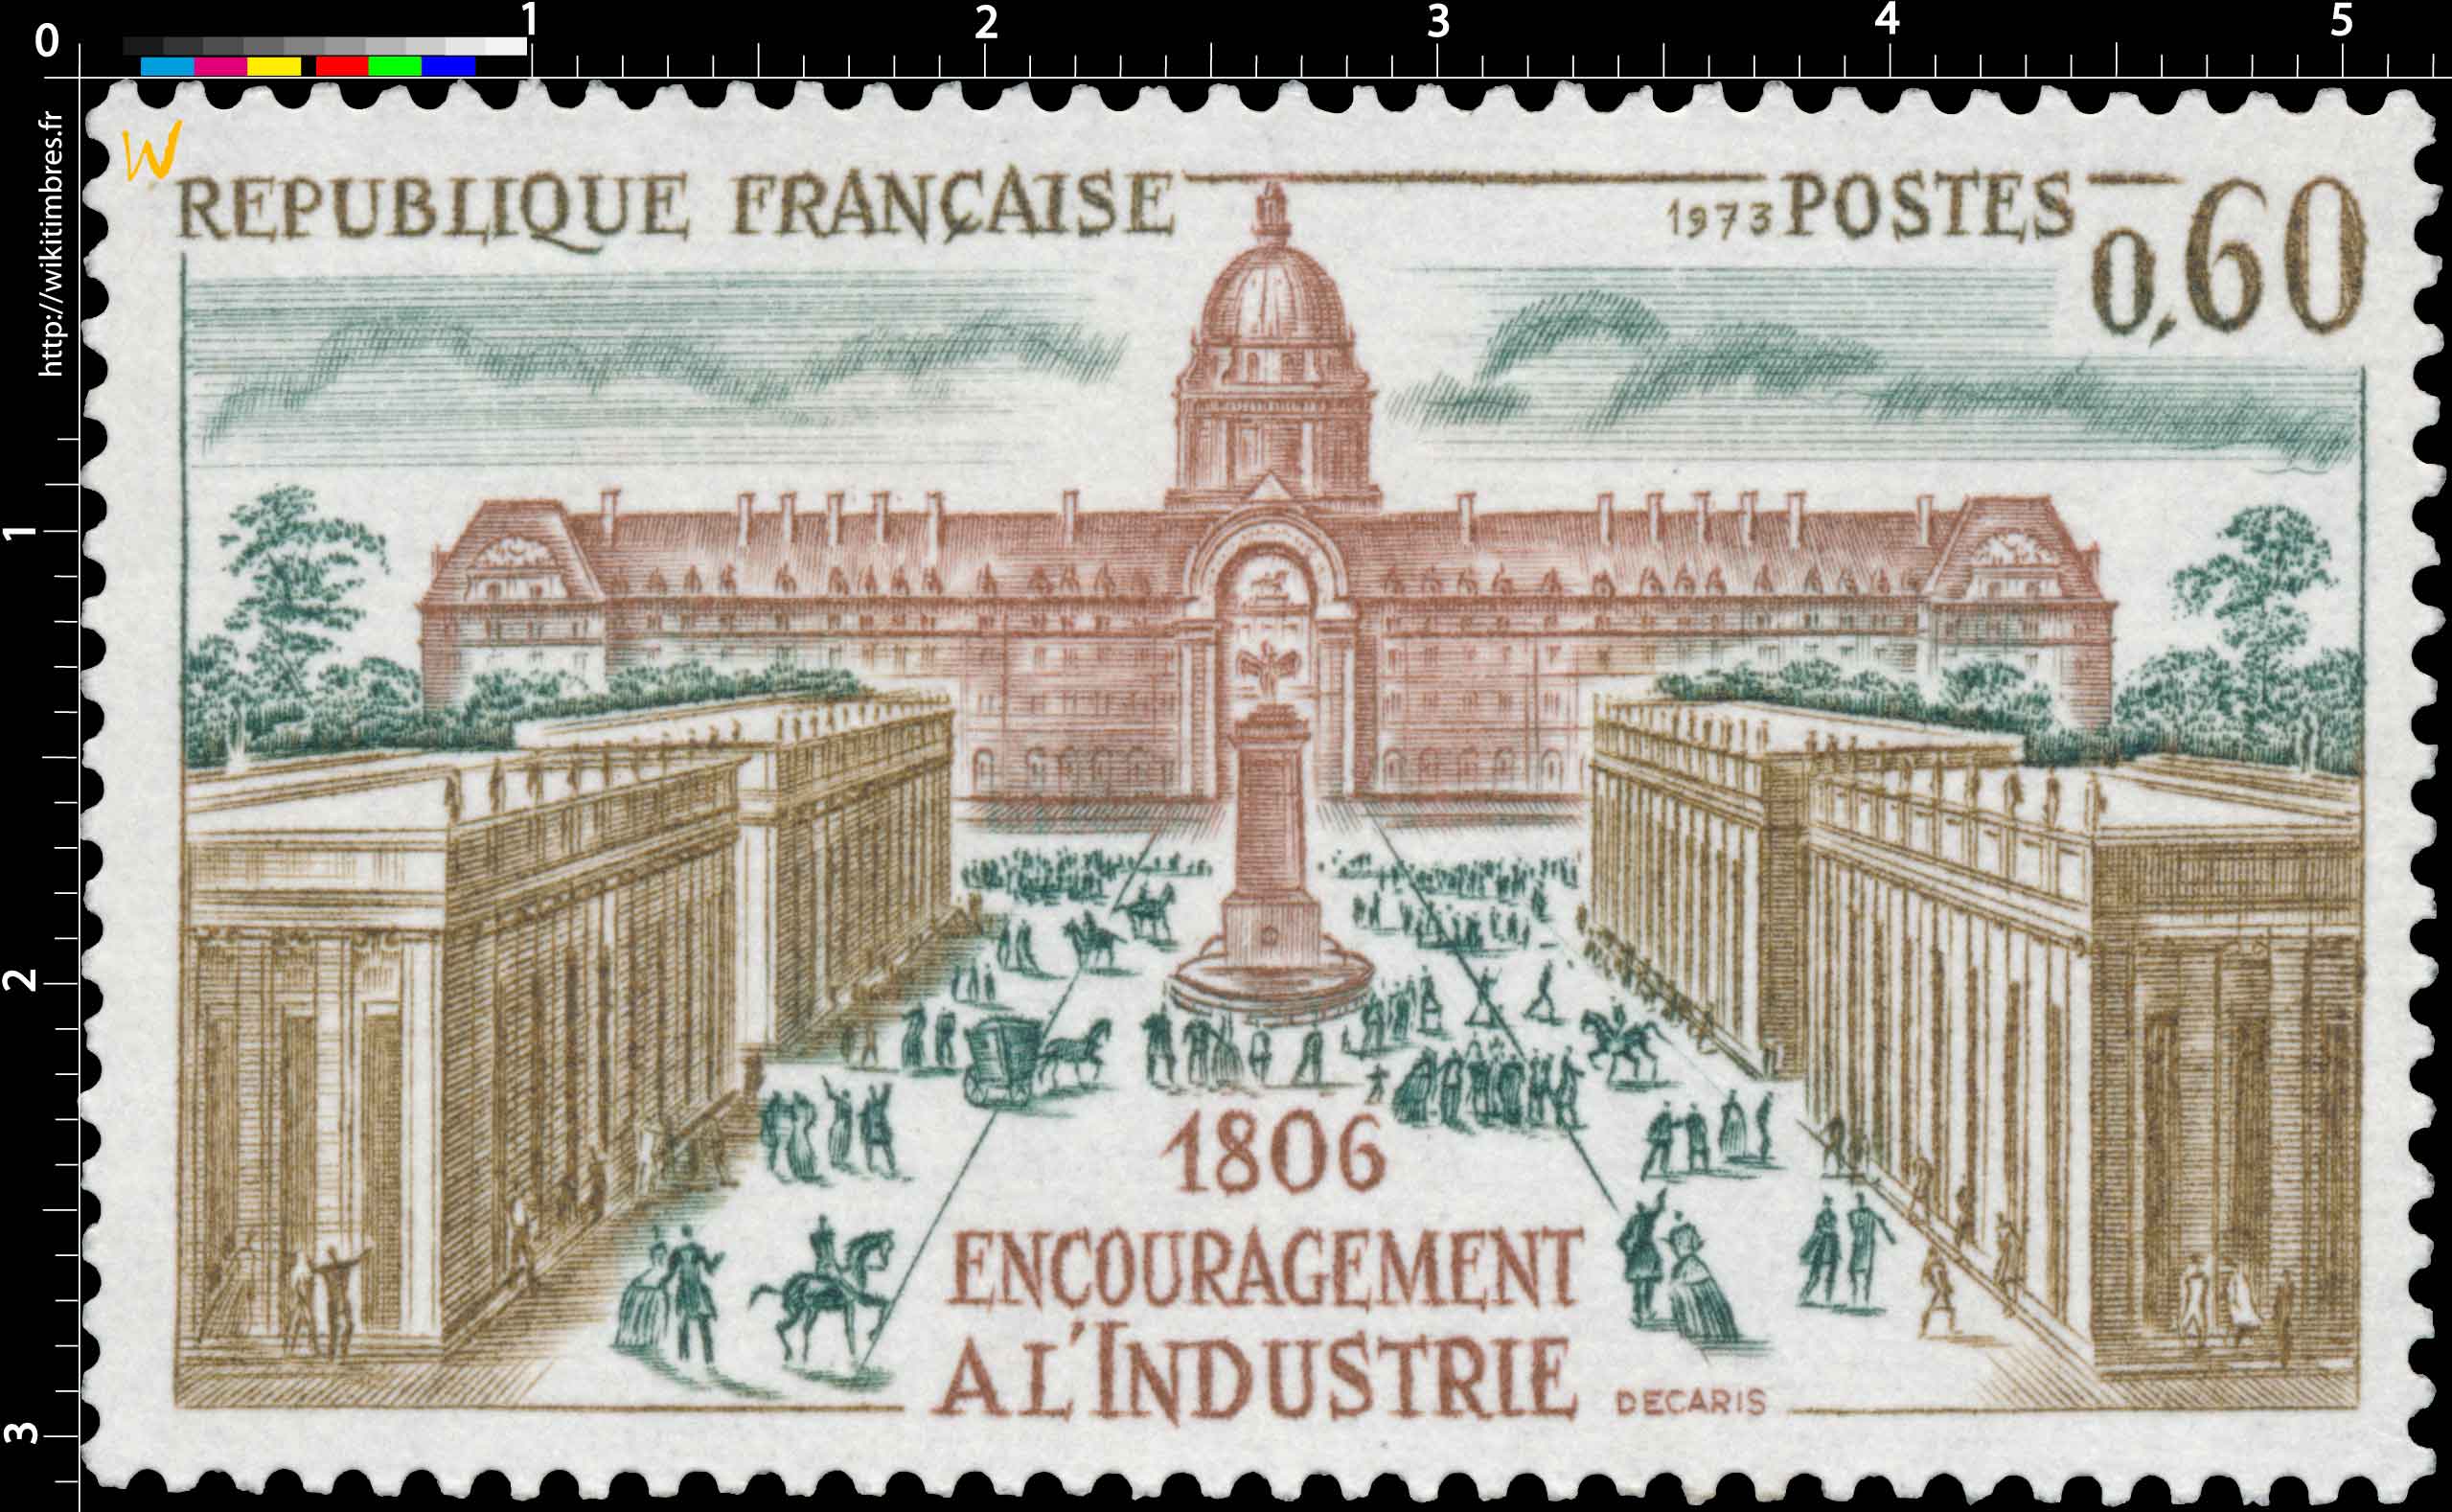 1973 ENCOURAGEMENT À L'INDUSTRIE 1806